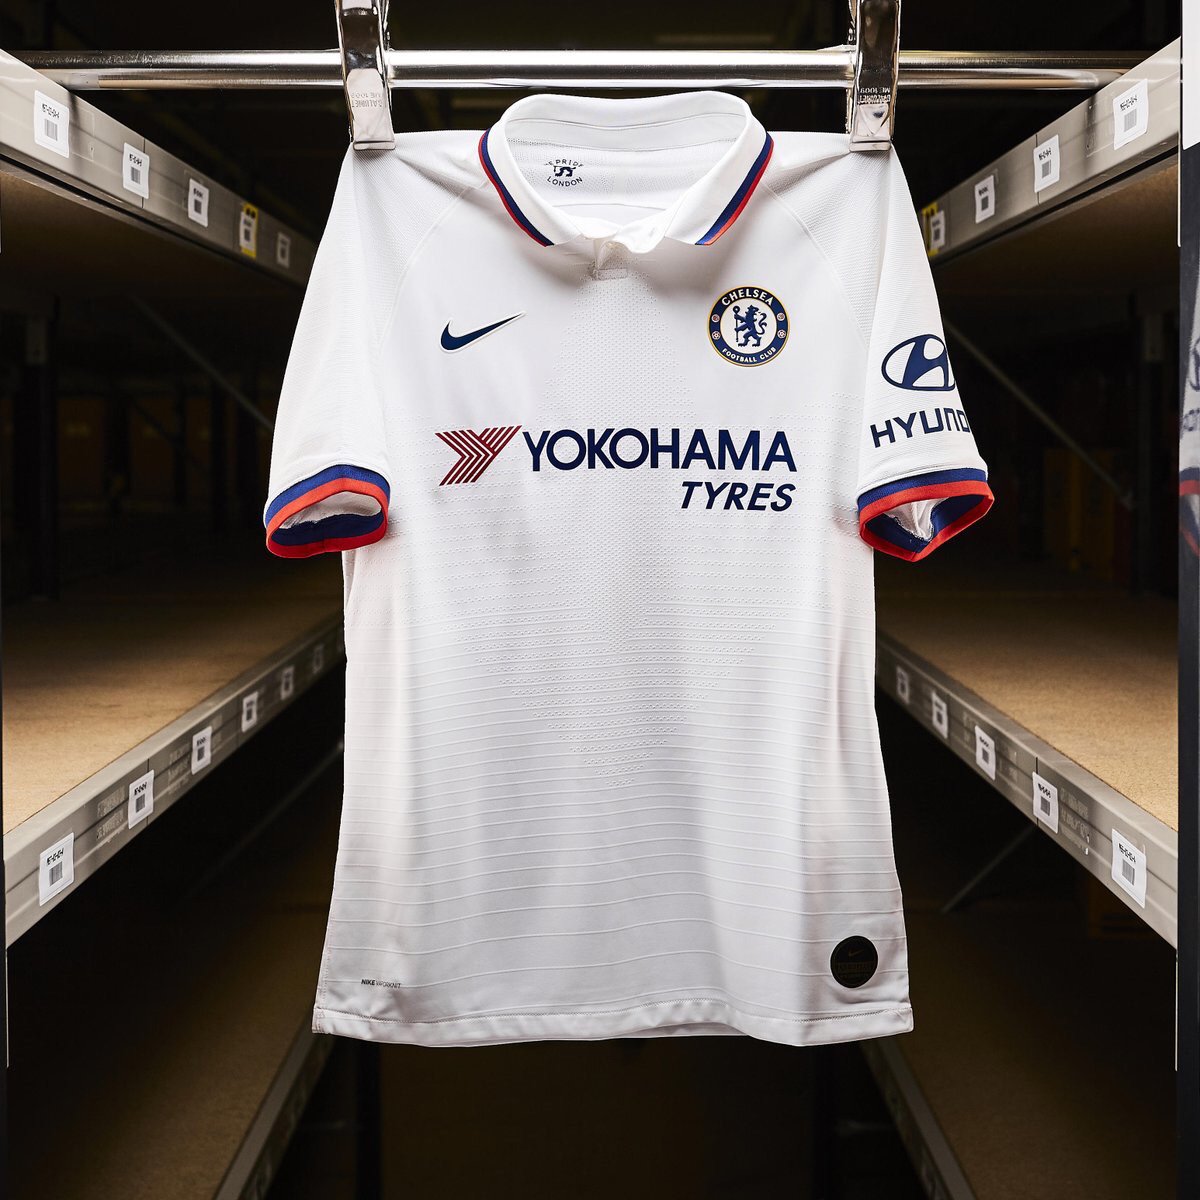 Chelsea 2019 2020 nouveau maillot exterieur Nike